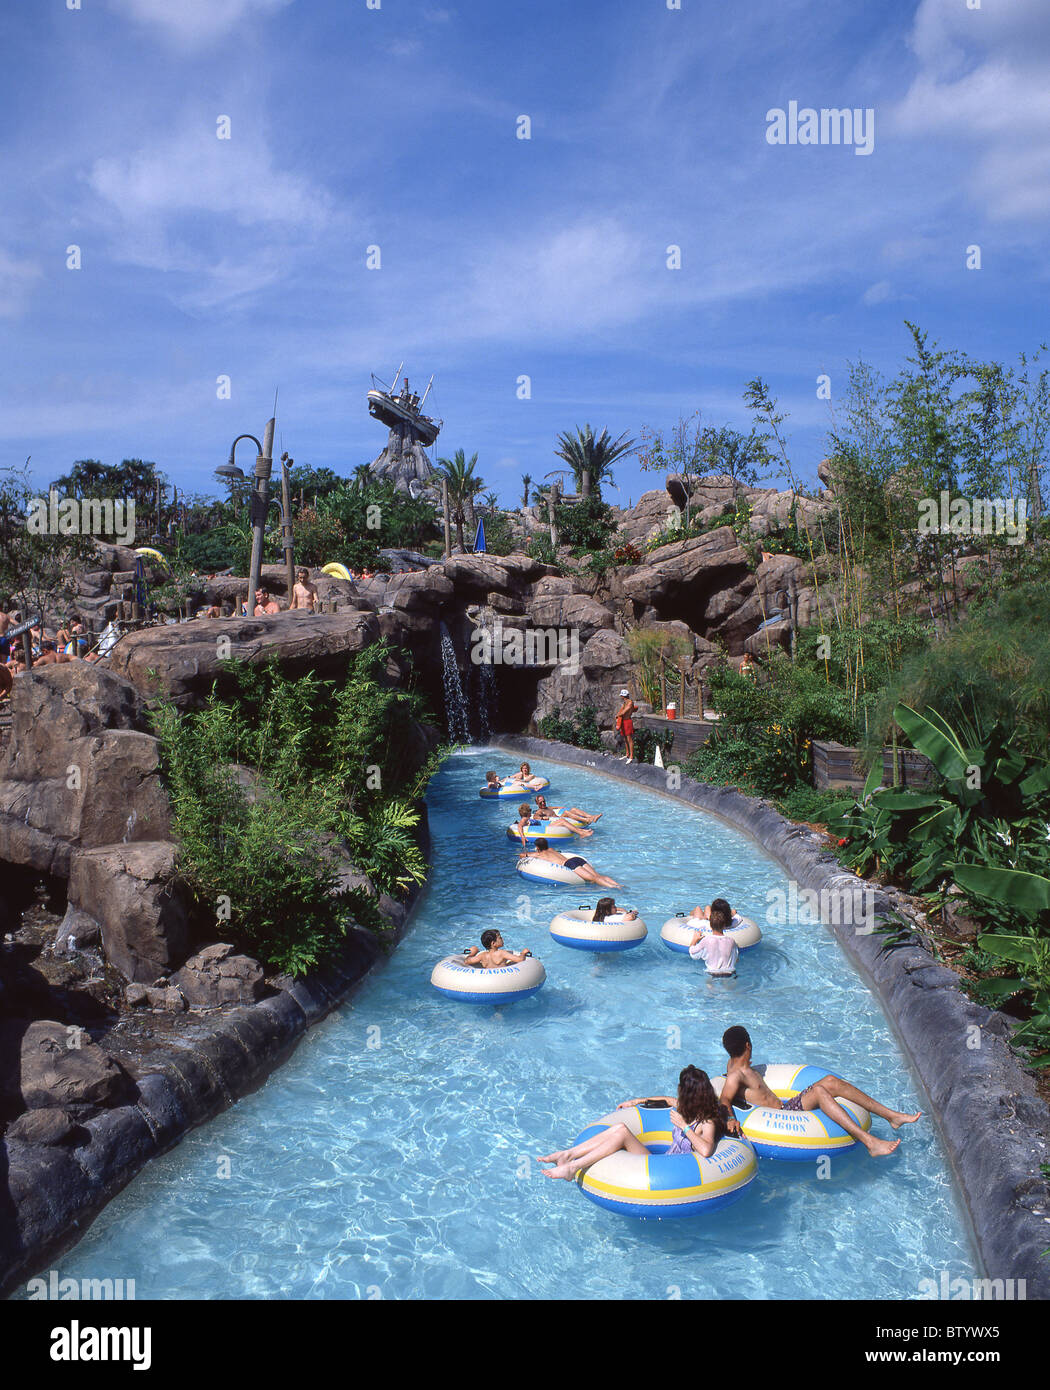 Trajet de l'eau, Typhoon Lagoon, Walt Disney World, Orlando, Floride, États-Unis d'Amérique Banque D'Images